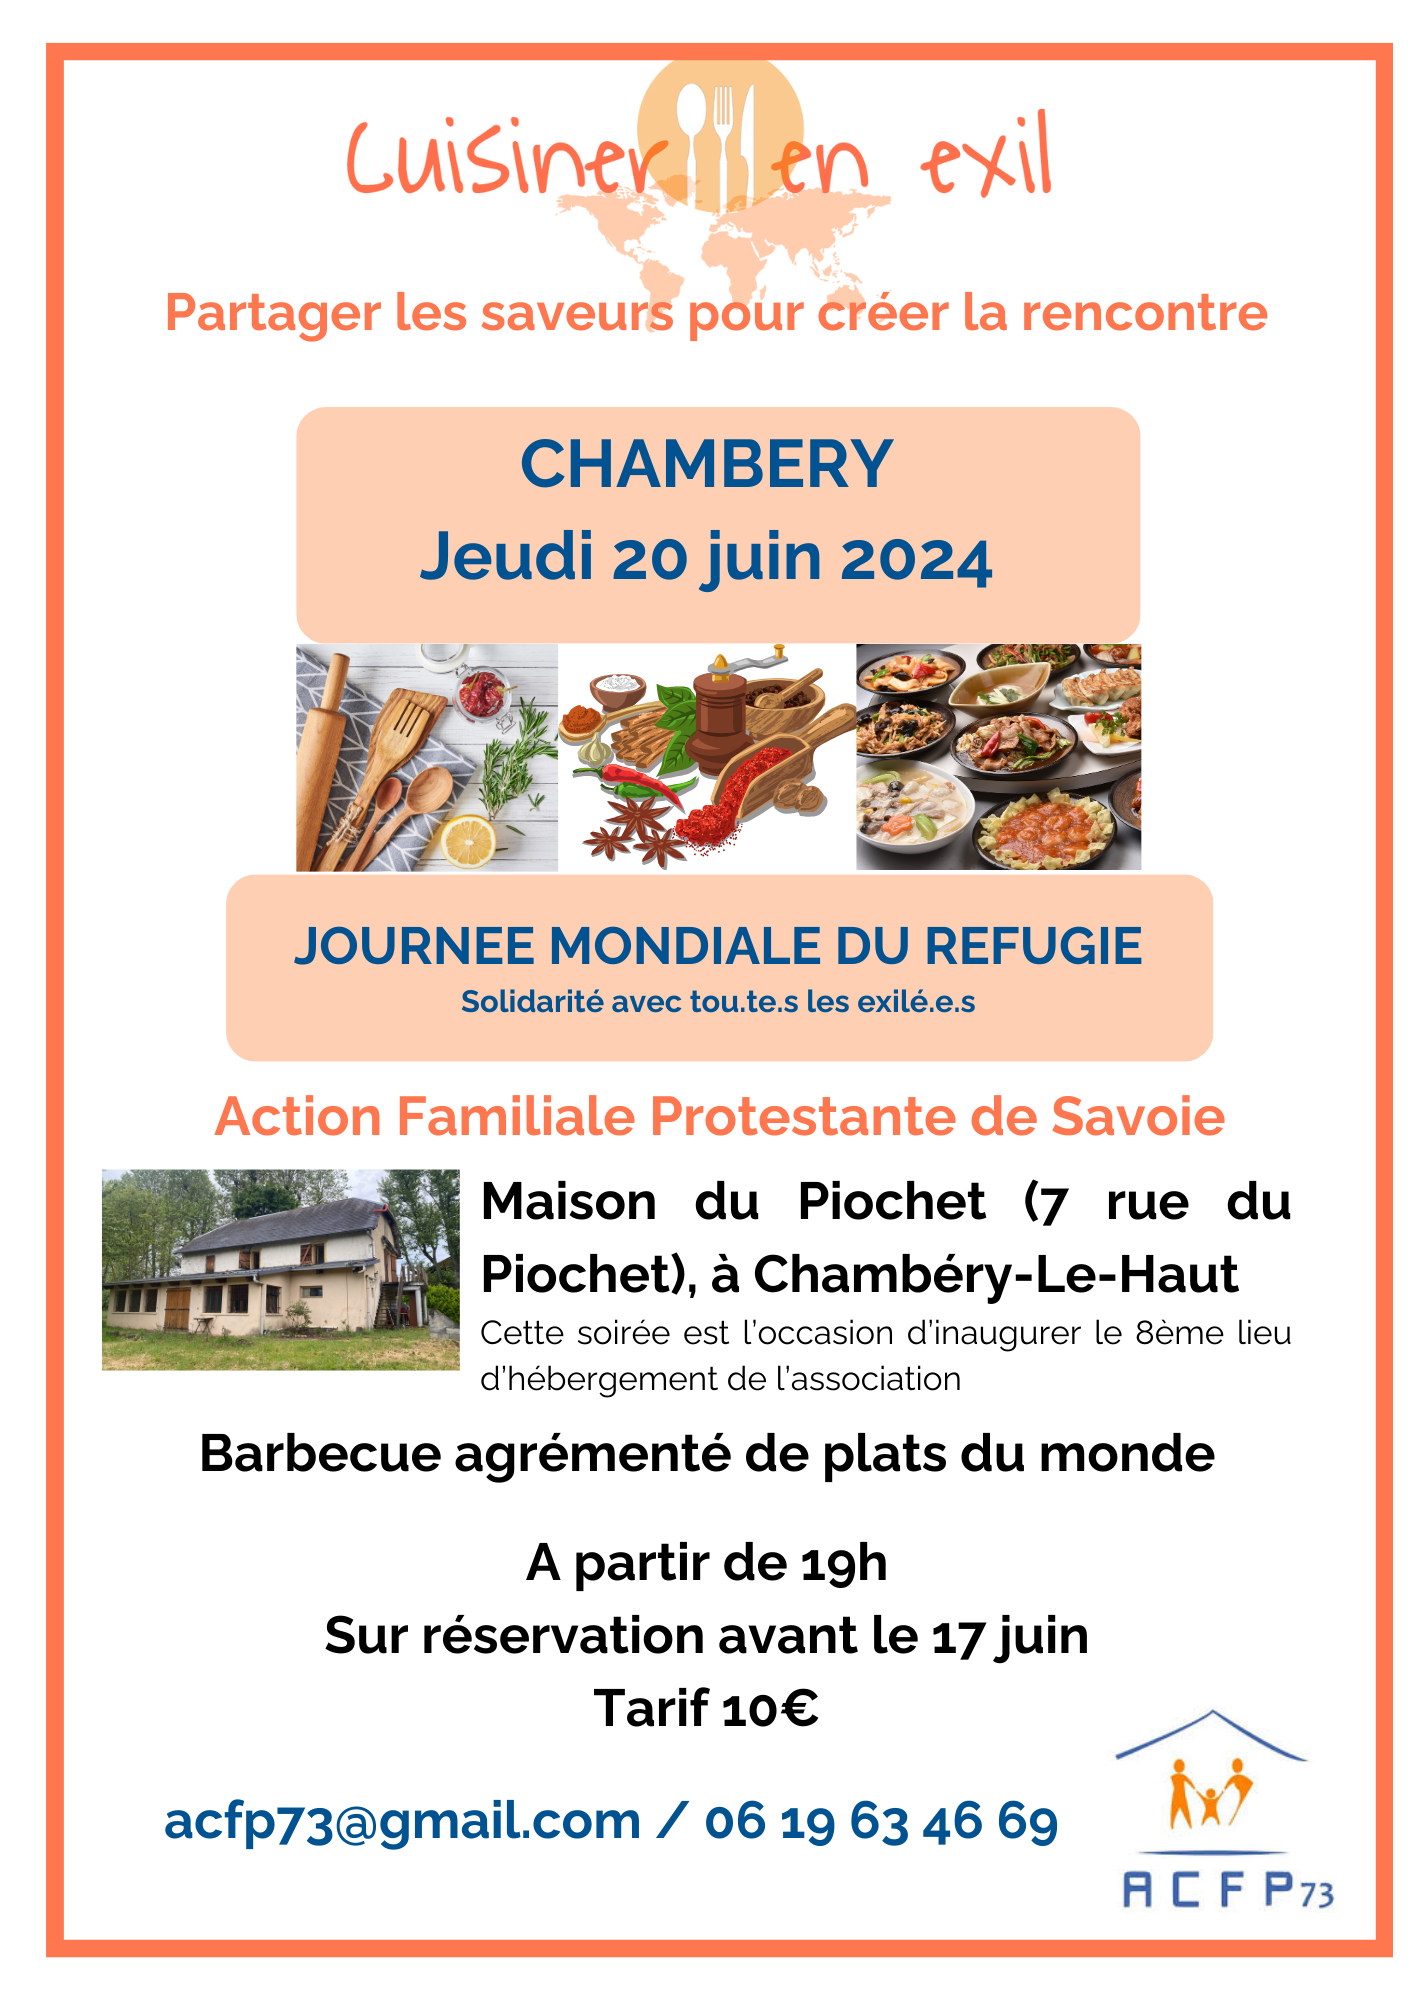 Rendez-vous à Chambéry le 15 juin